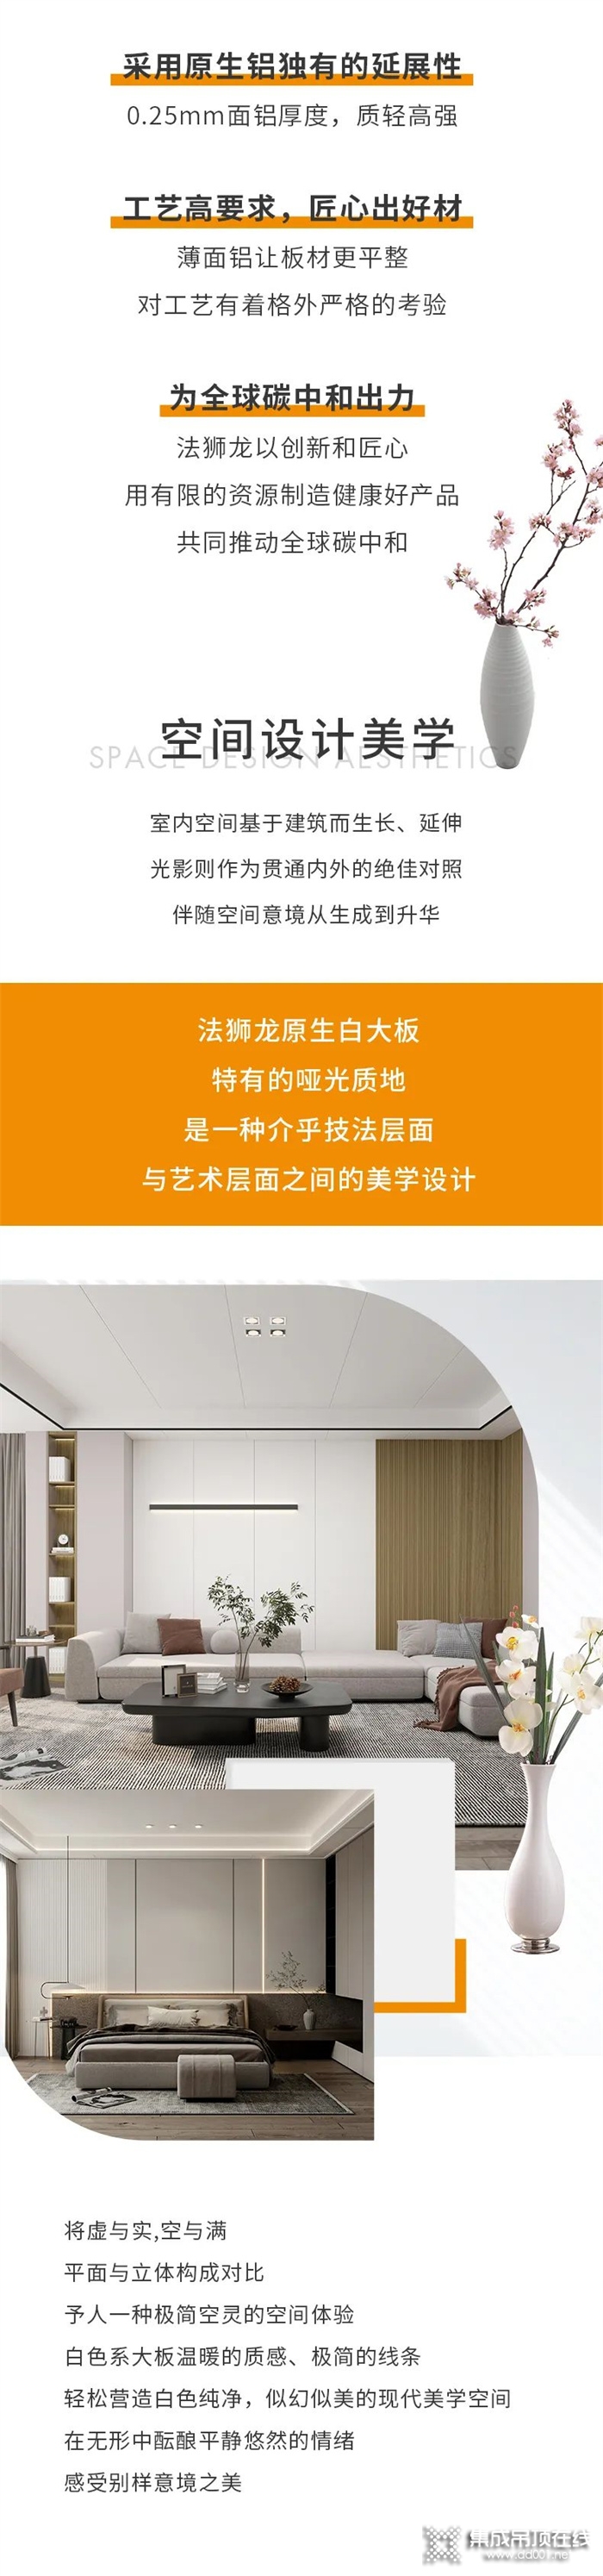 法狮龙新品发布 | 悦尚原生白大板—设计师更钟爱的吊顶新典范